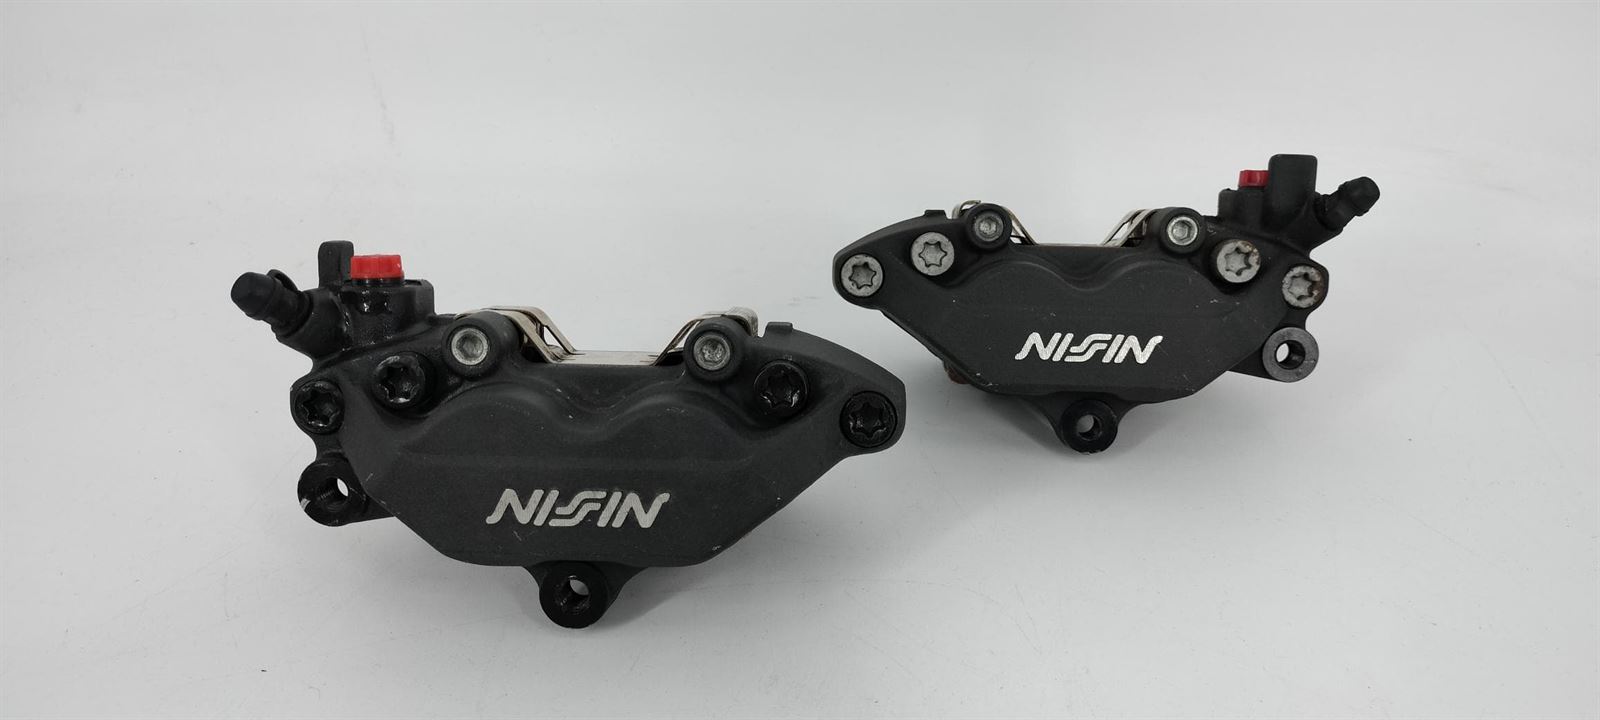 Juego de pinzas de freno Nissin para Honda CBR 600 F (Ocasion) - Imagen 1